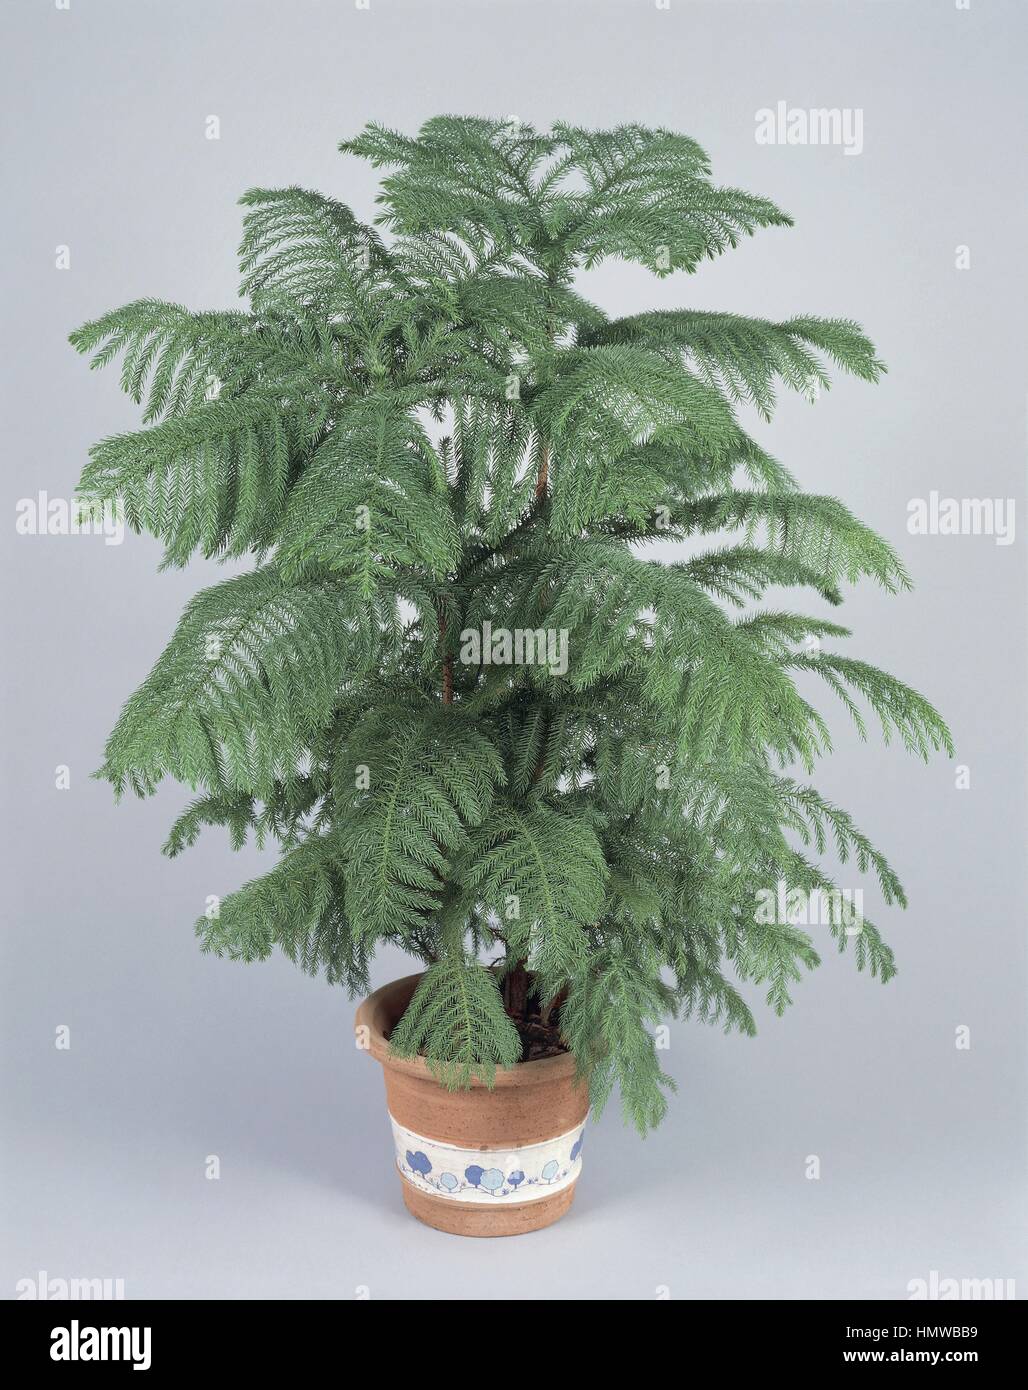 Houseplants - Araucariaceae. Norfolk Island pine (Araucaria heterophylla) Stock Photo